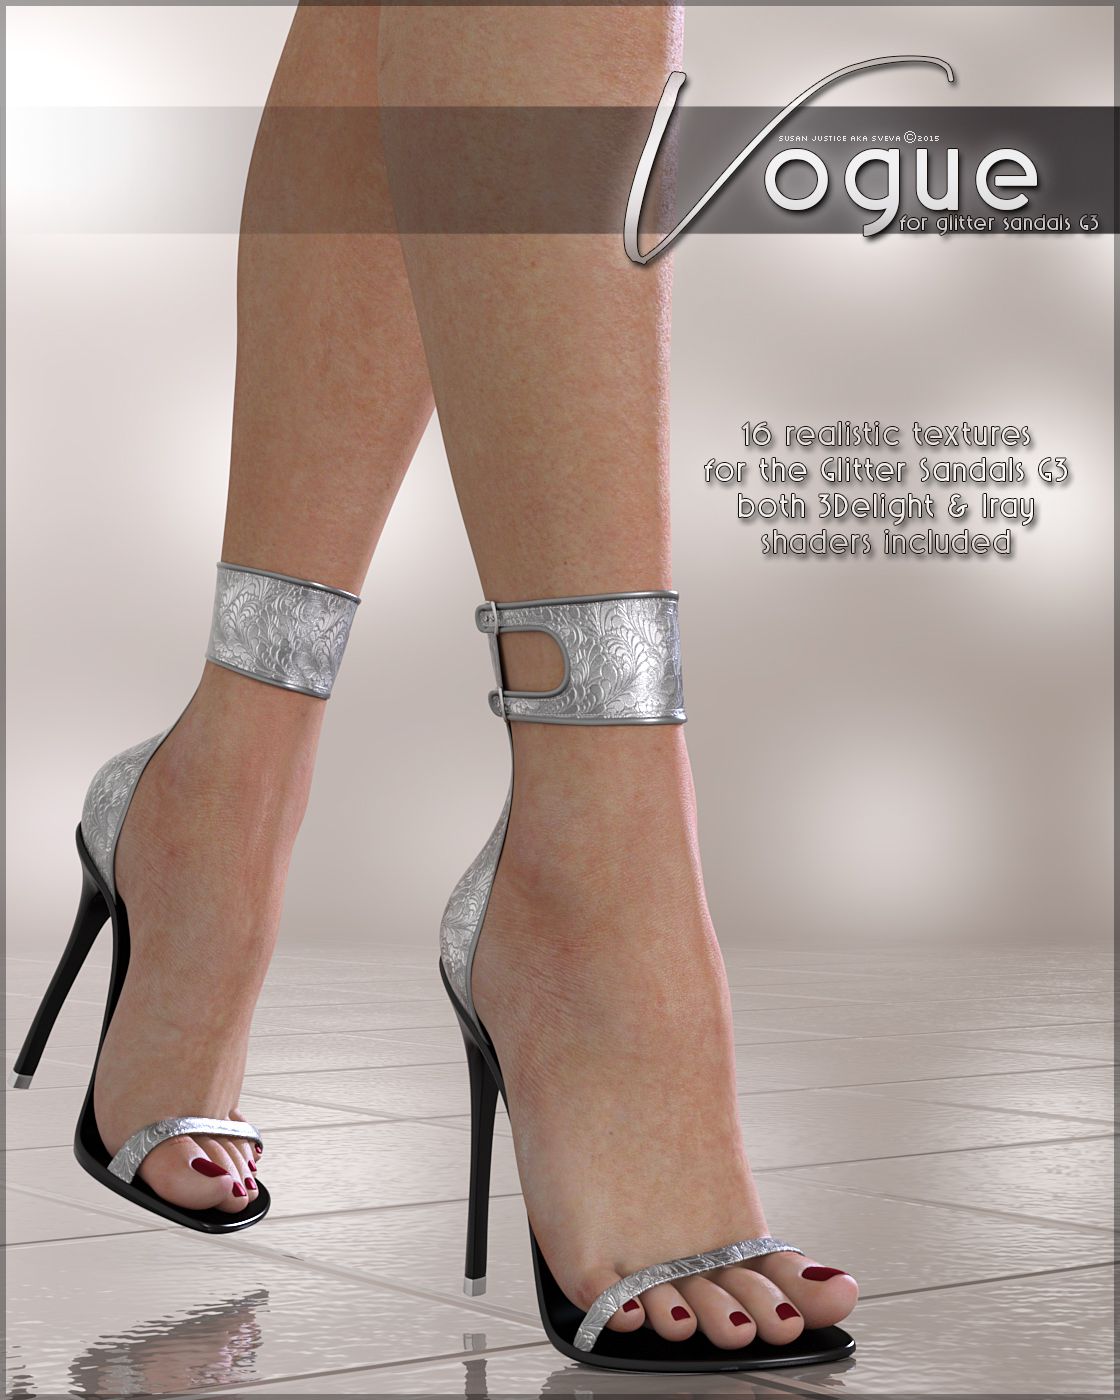 Vogue for Glitter Sandals_DAZ3D下载站